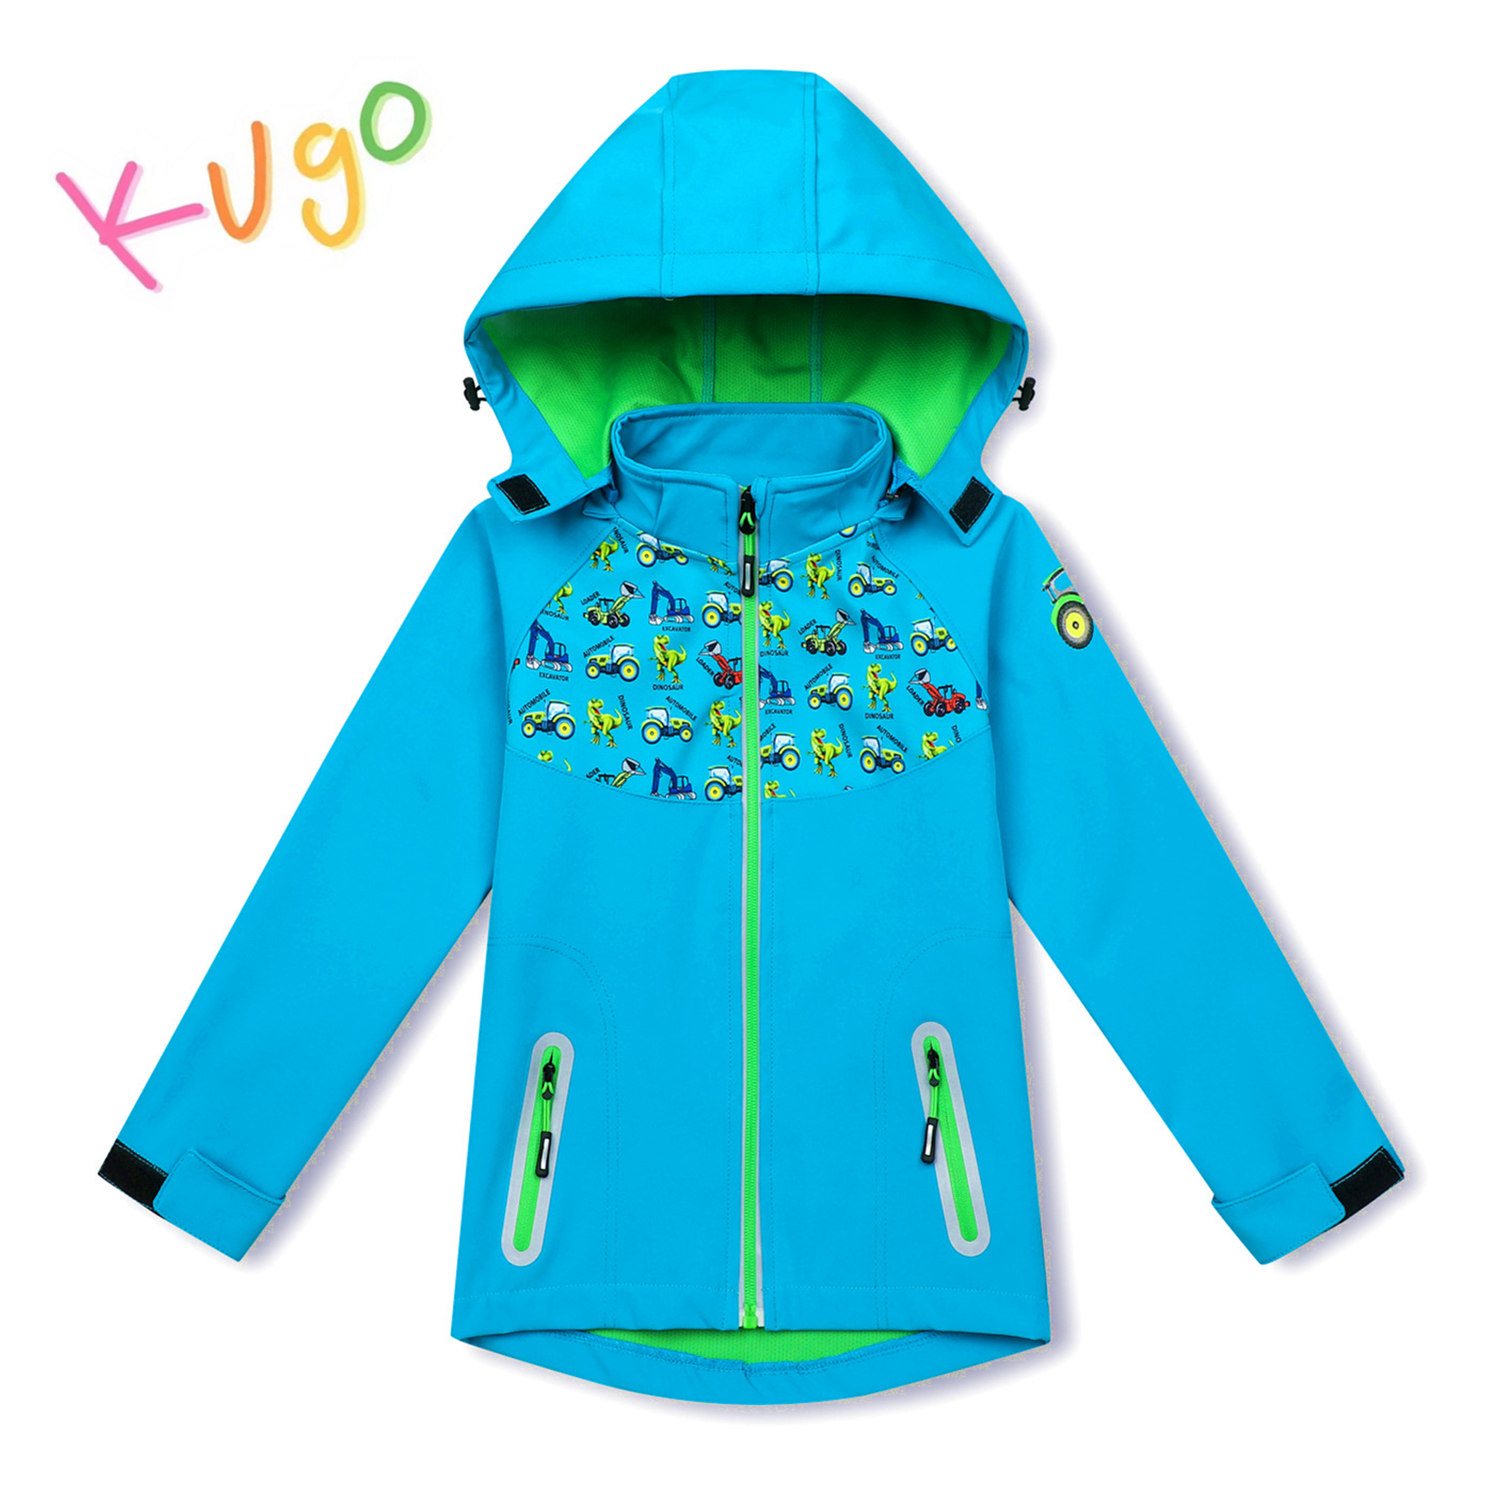 Chlapecká softshellová bunda - KUGO HK3121, tyrkysová Barva: Tyrkysová, Velikost: 98